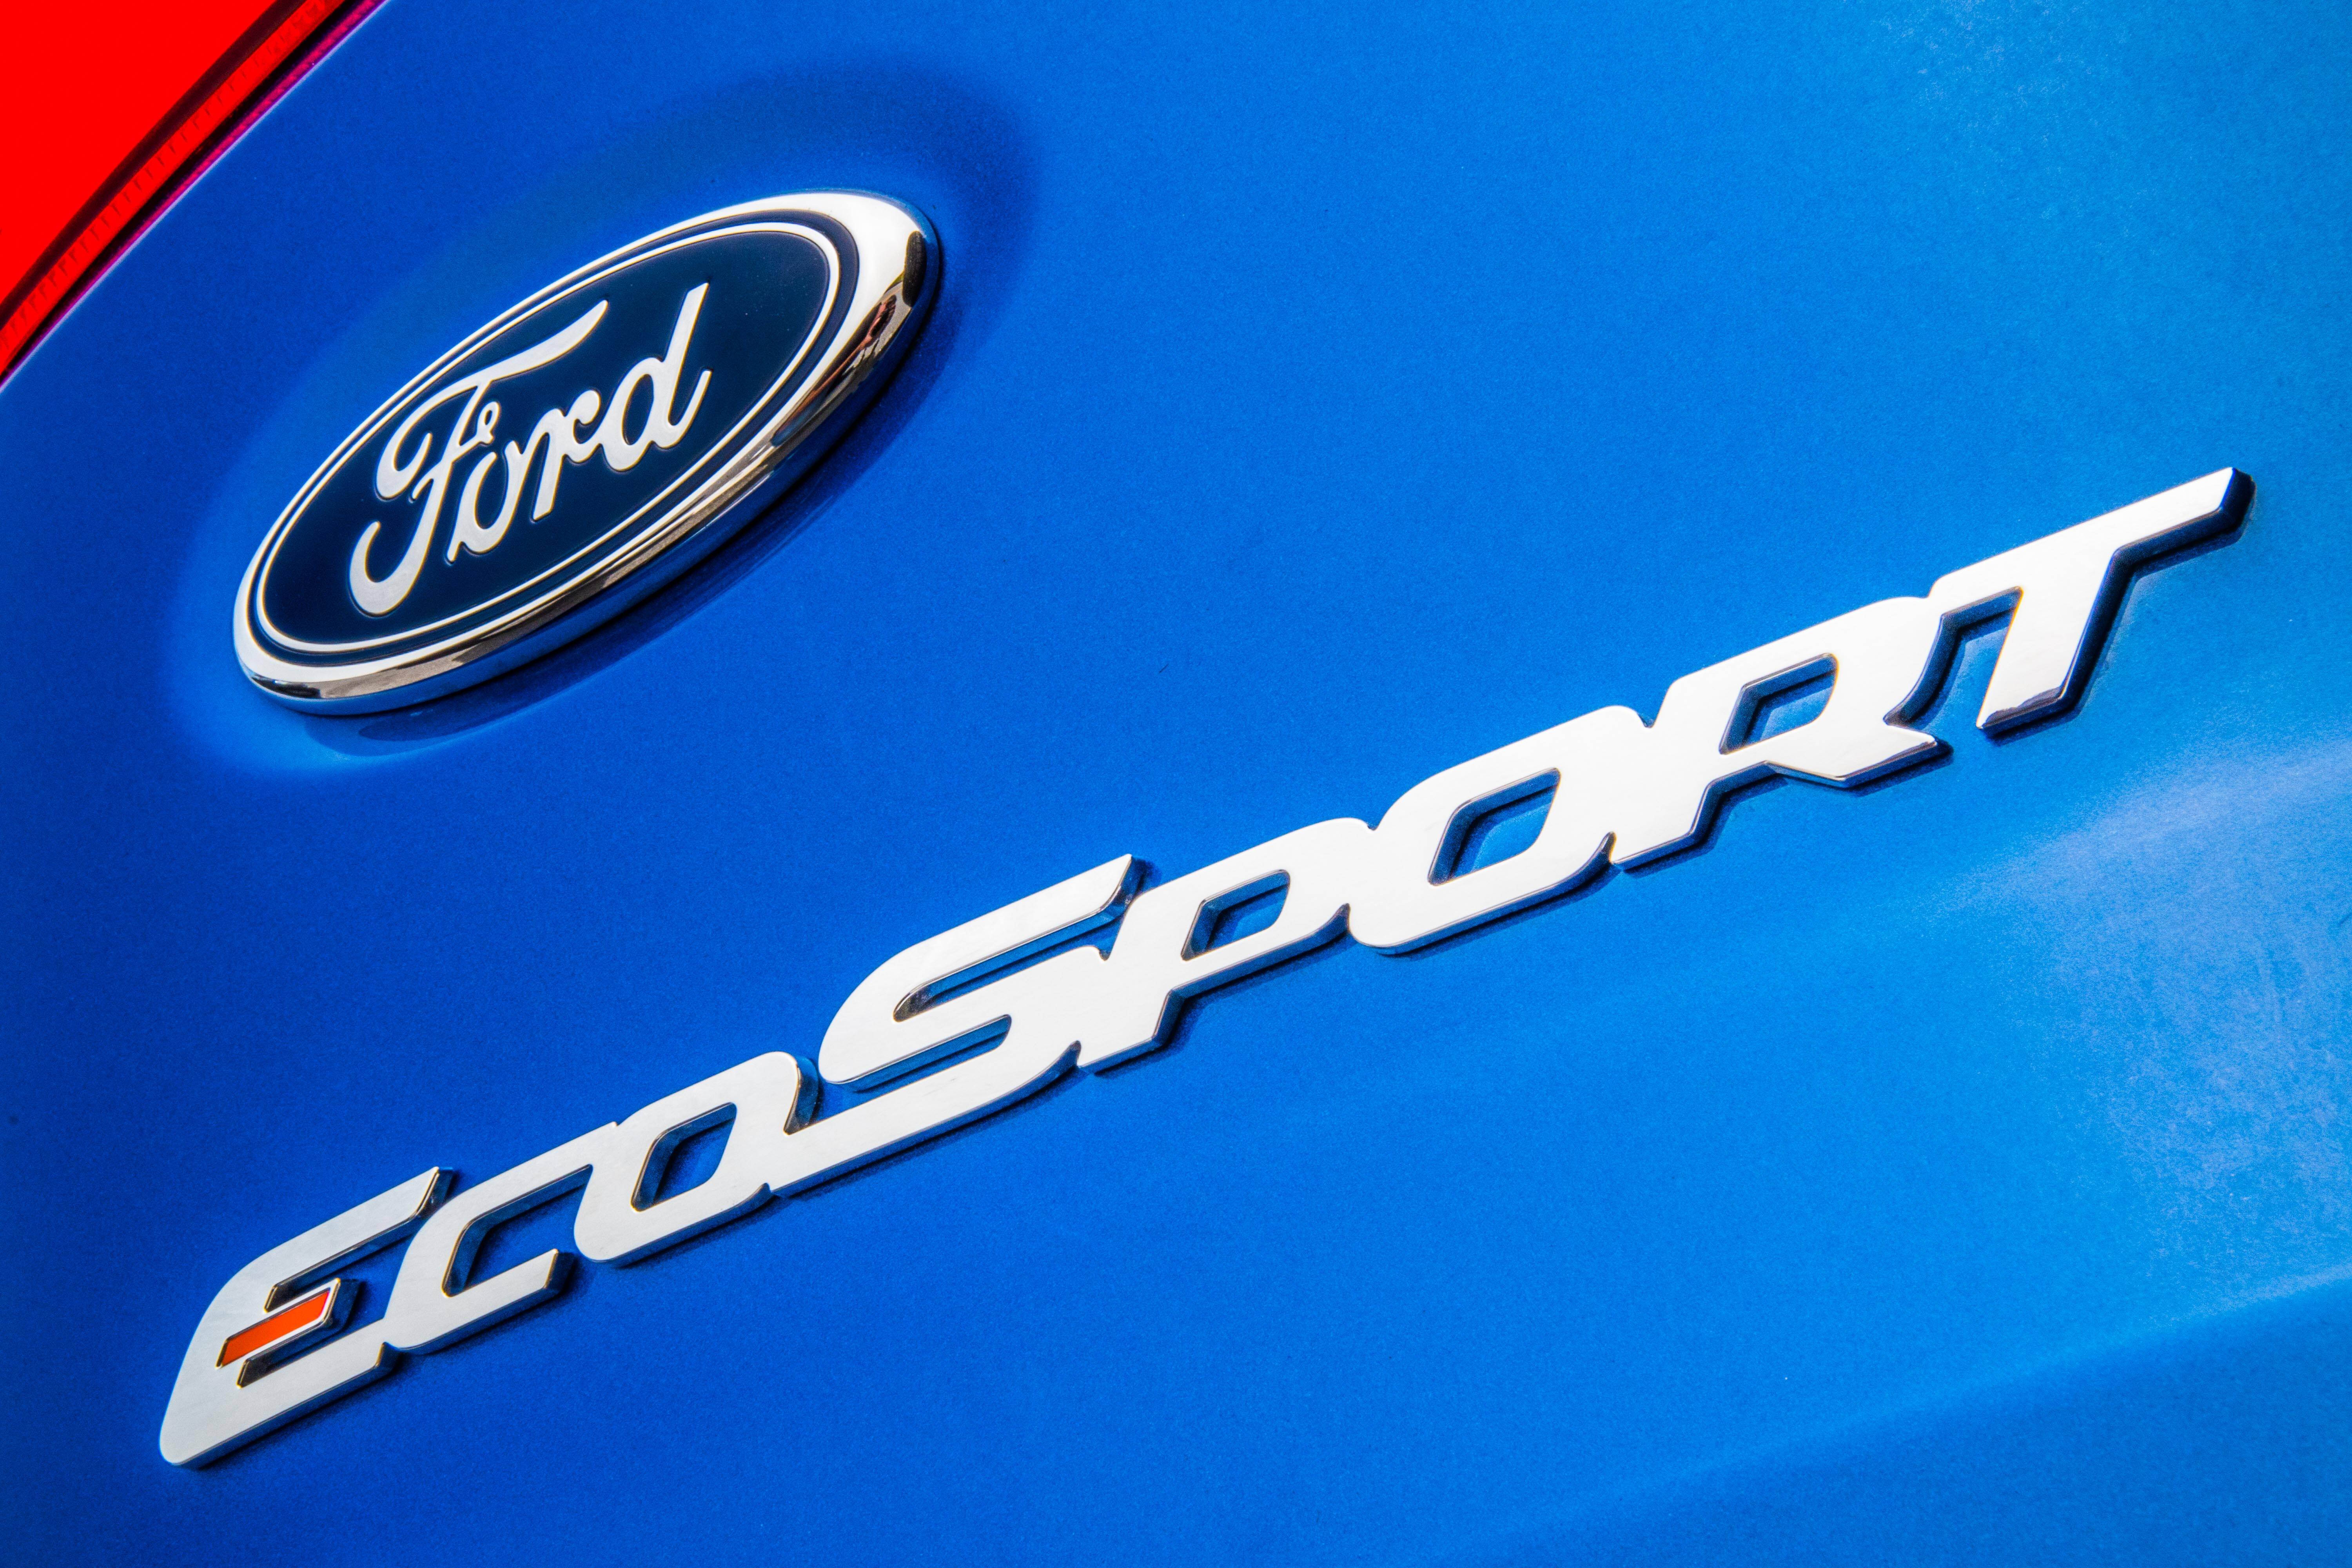 Ford EcoSport 2018. Foto: Divulgação